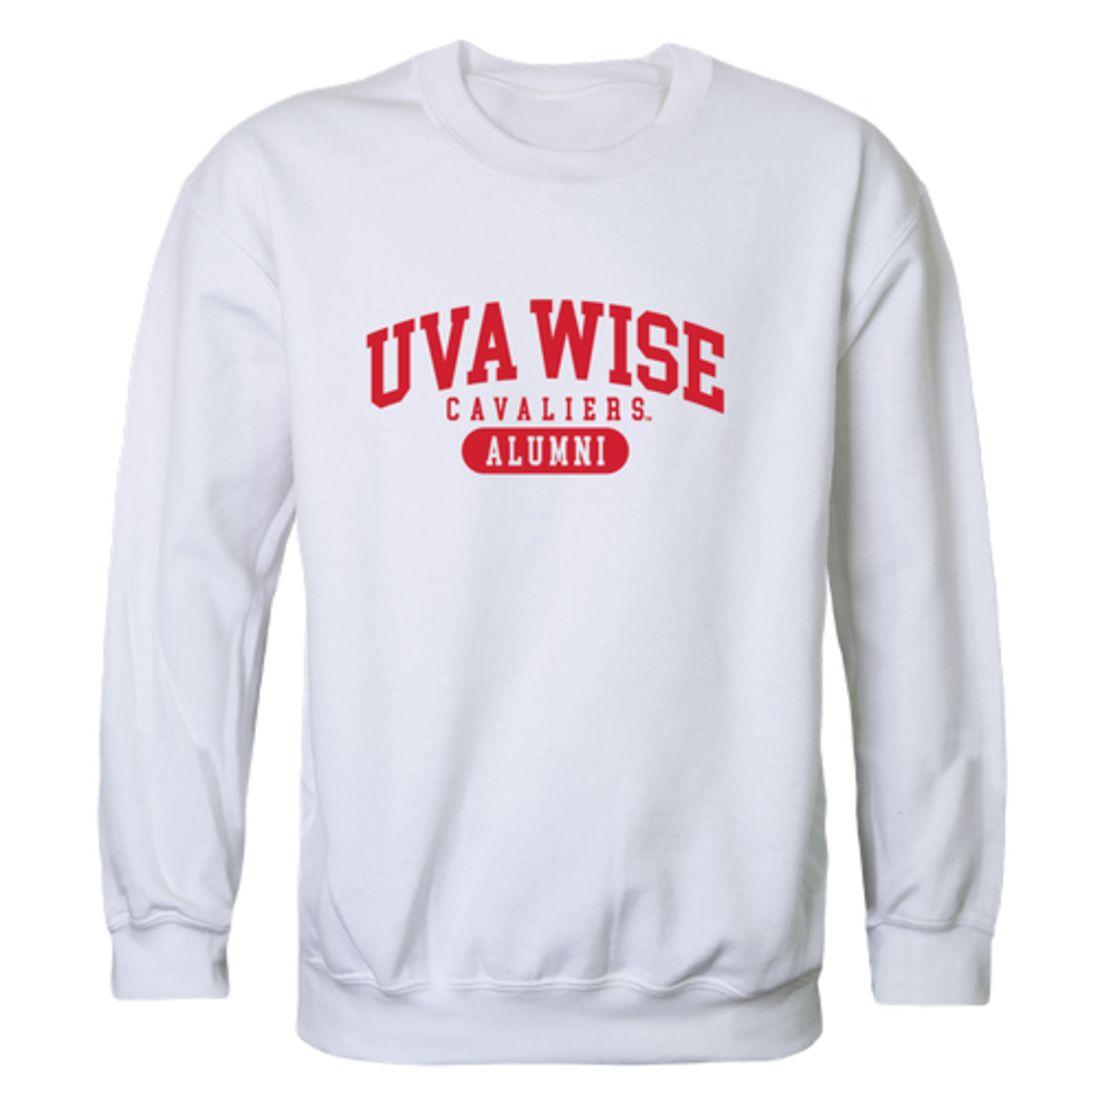 University-of-Virginia's-College-at-Wise-Cavaliers-Alumni-Fleece-Crewneck-Pullover-Sweatshirt